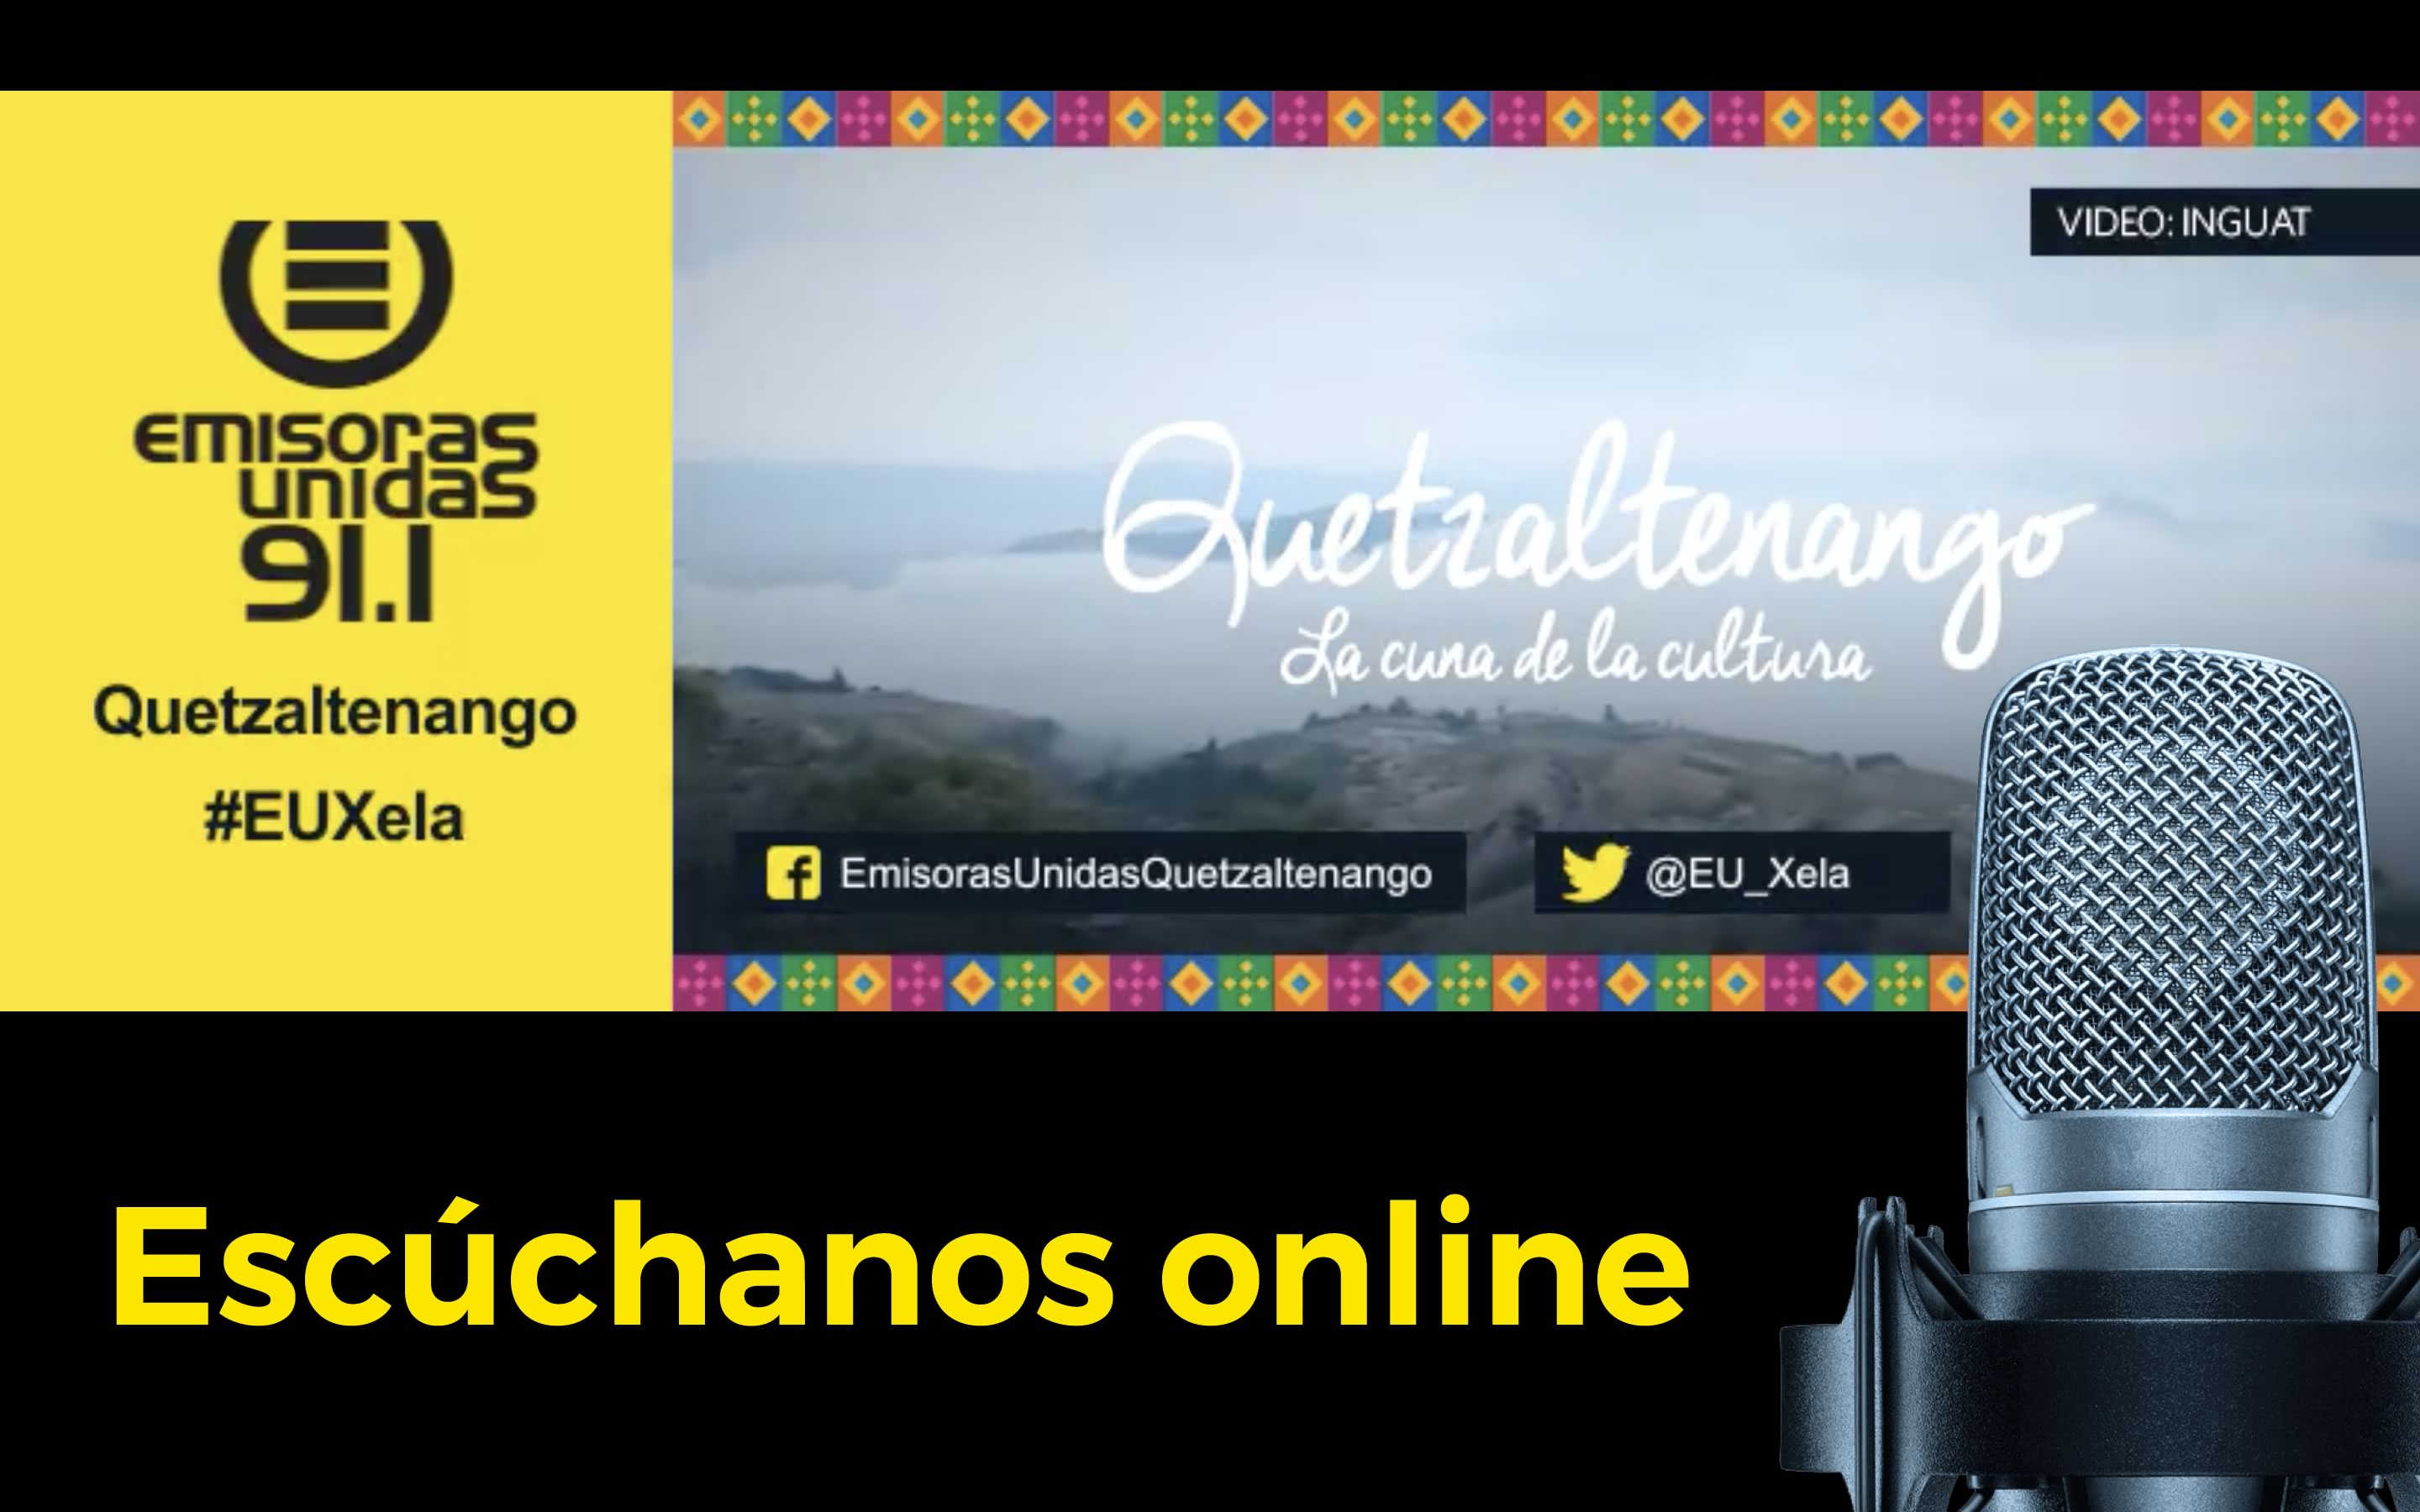 #euxela quetzaltenango streaming online radio live guatemala emisoras unidas eu